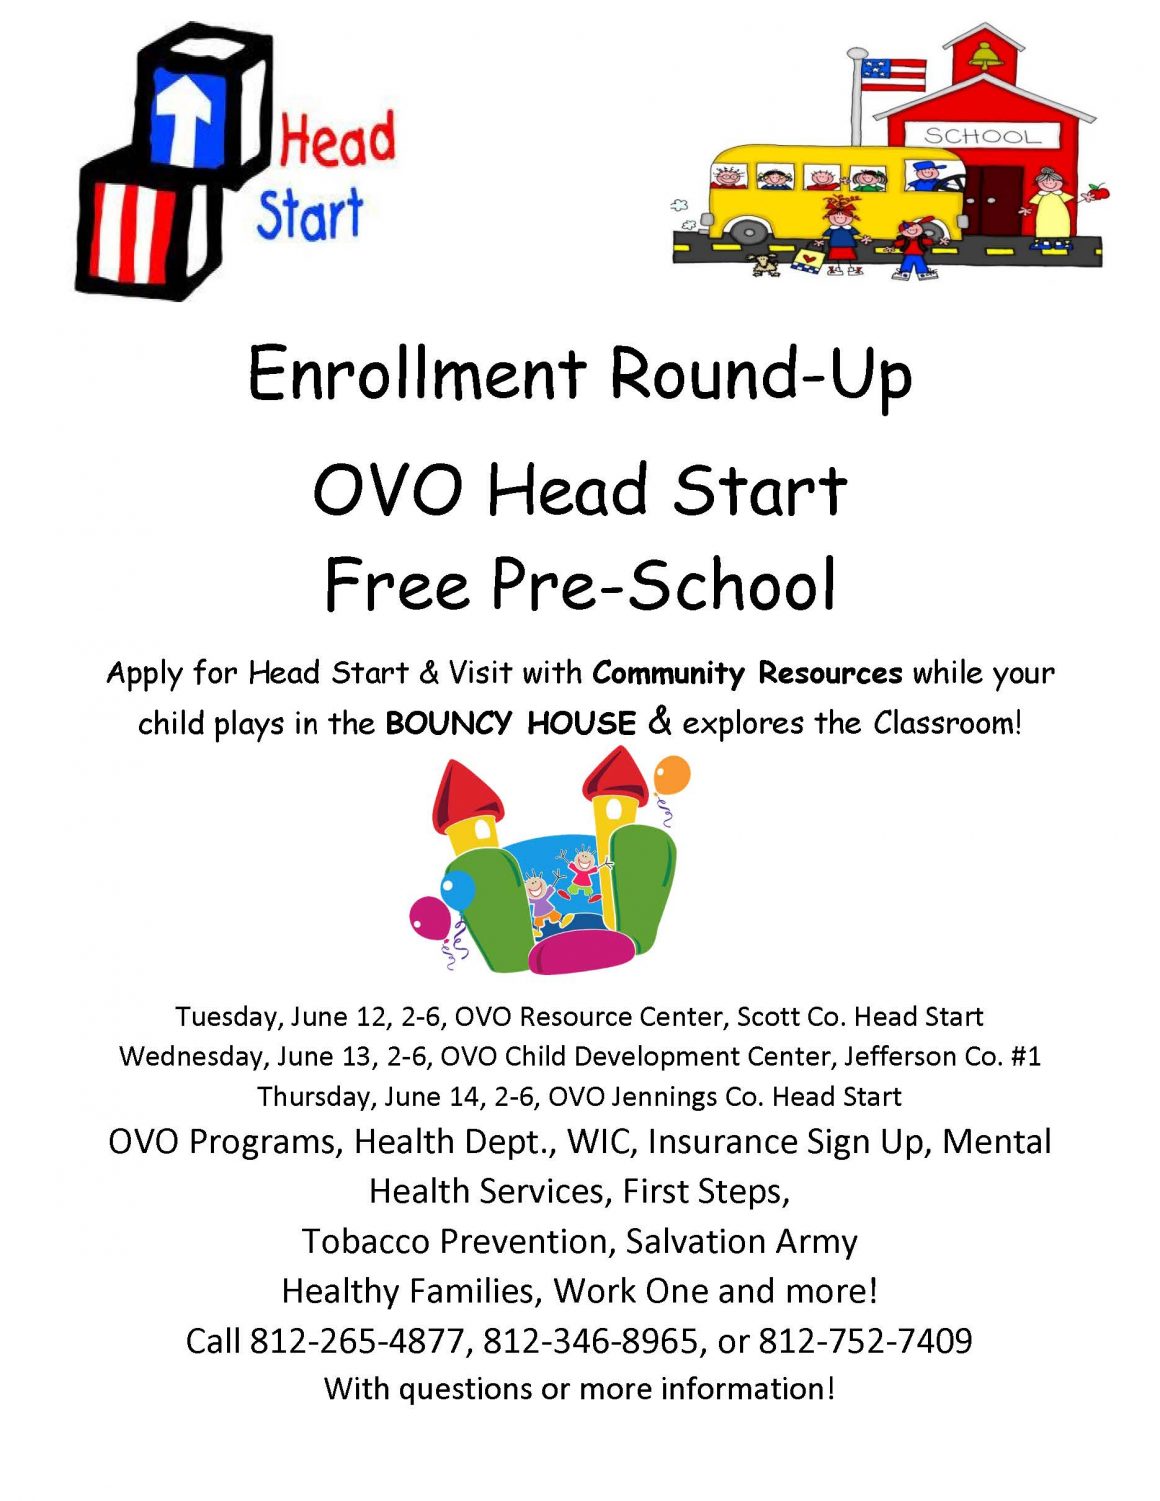 Head Start Enrollment Round-ups!